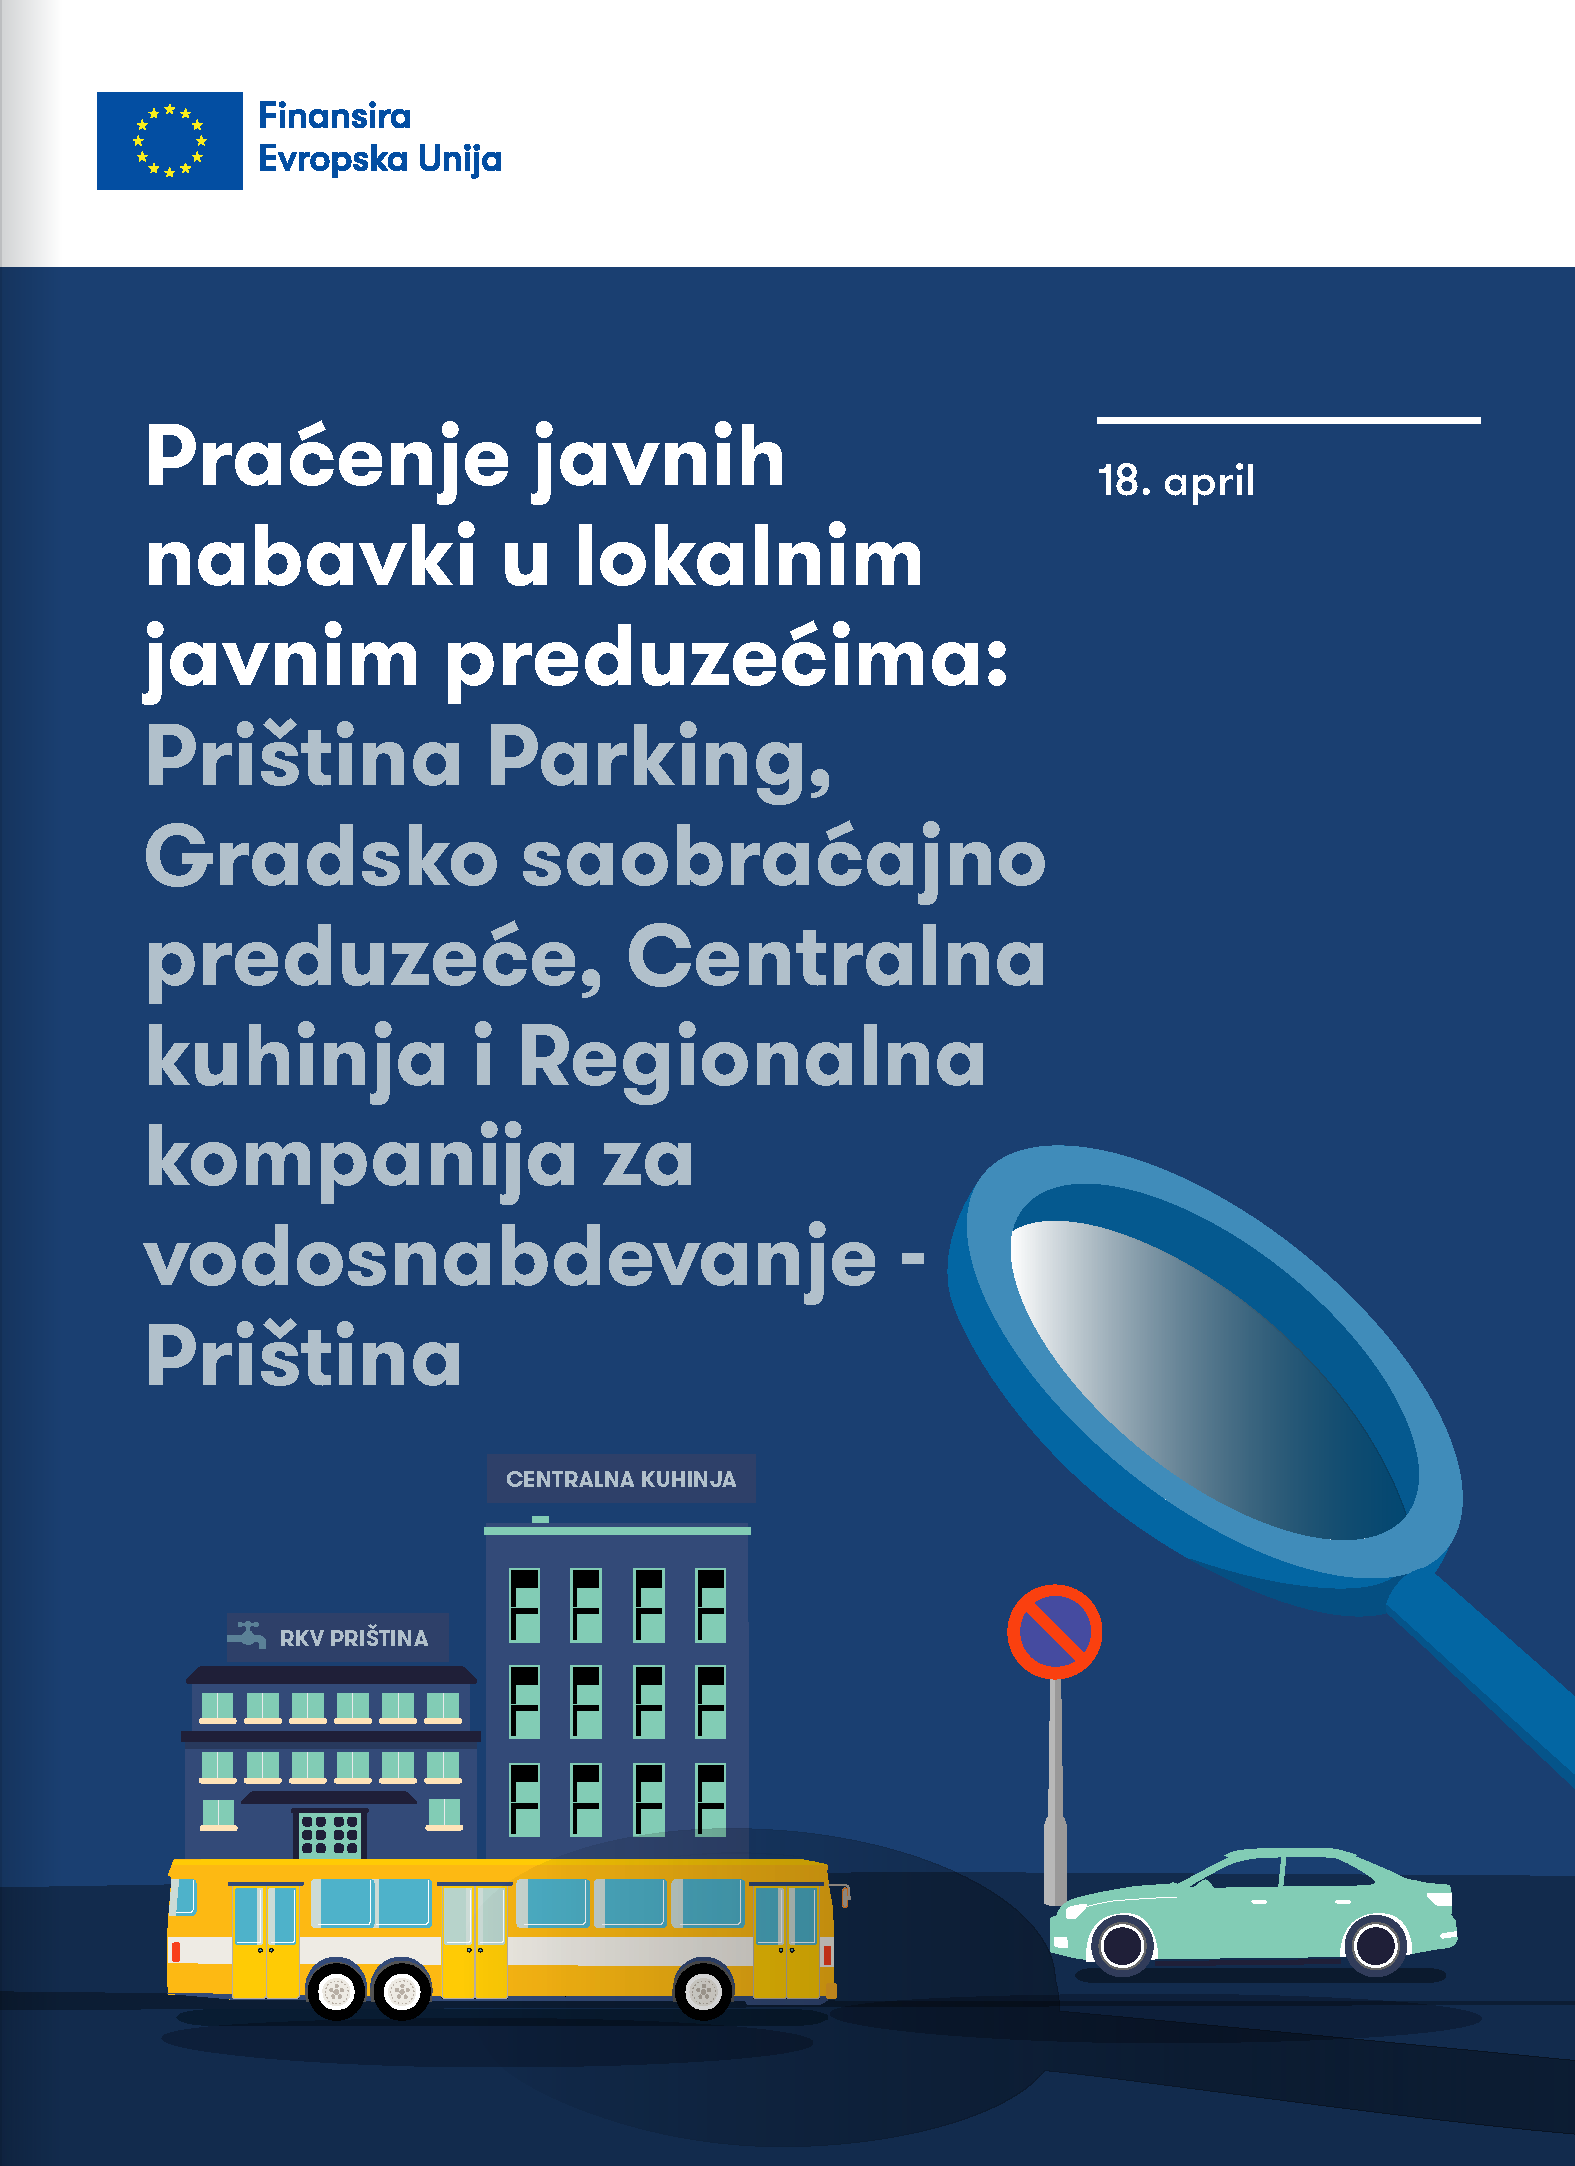 Praćenje javnih nabavki u lokalnim javnim preduzećima: Priština Parking, Gradsko saobraćajno preduzeće, Centralna kuhinja i Regionalna kompanija za vodosnabdevanje – Priština